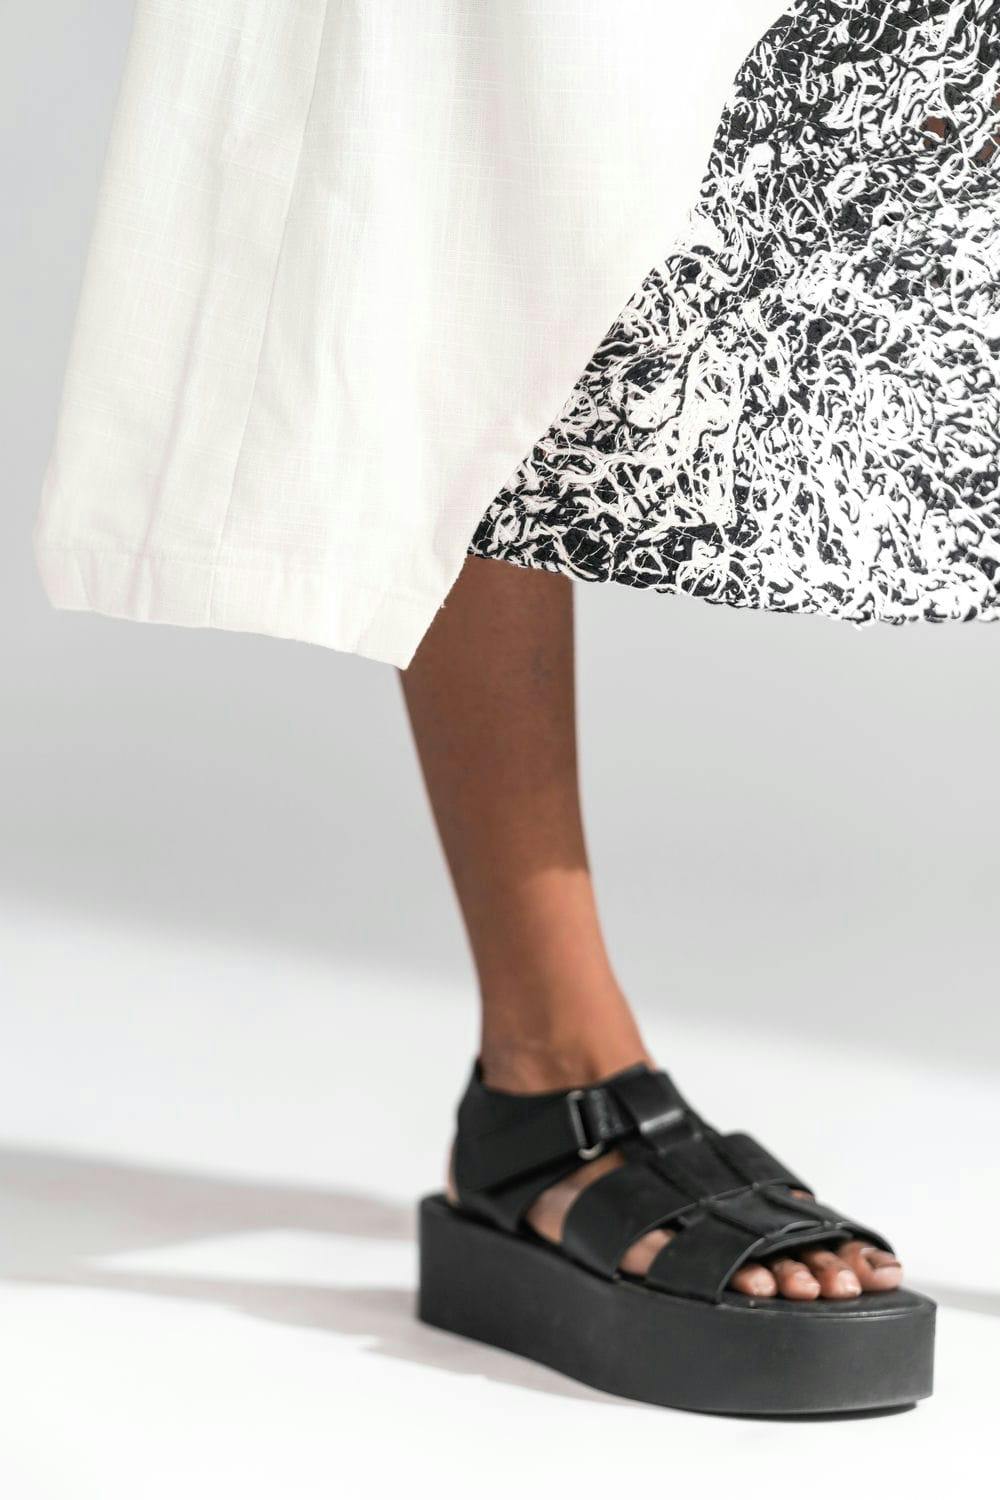 Thumbnail preview #5 for ATBW - Externals Asymmetrical Skirt